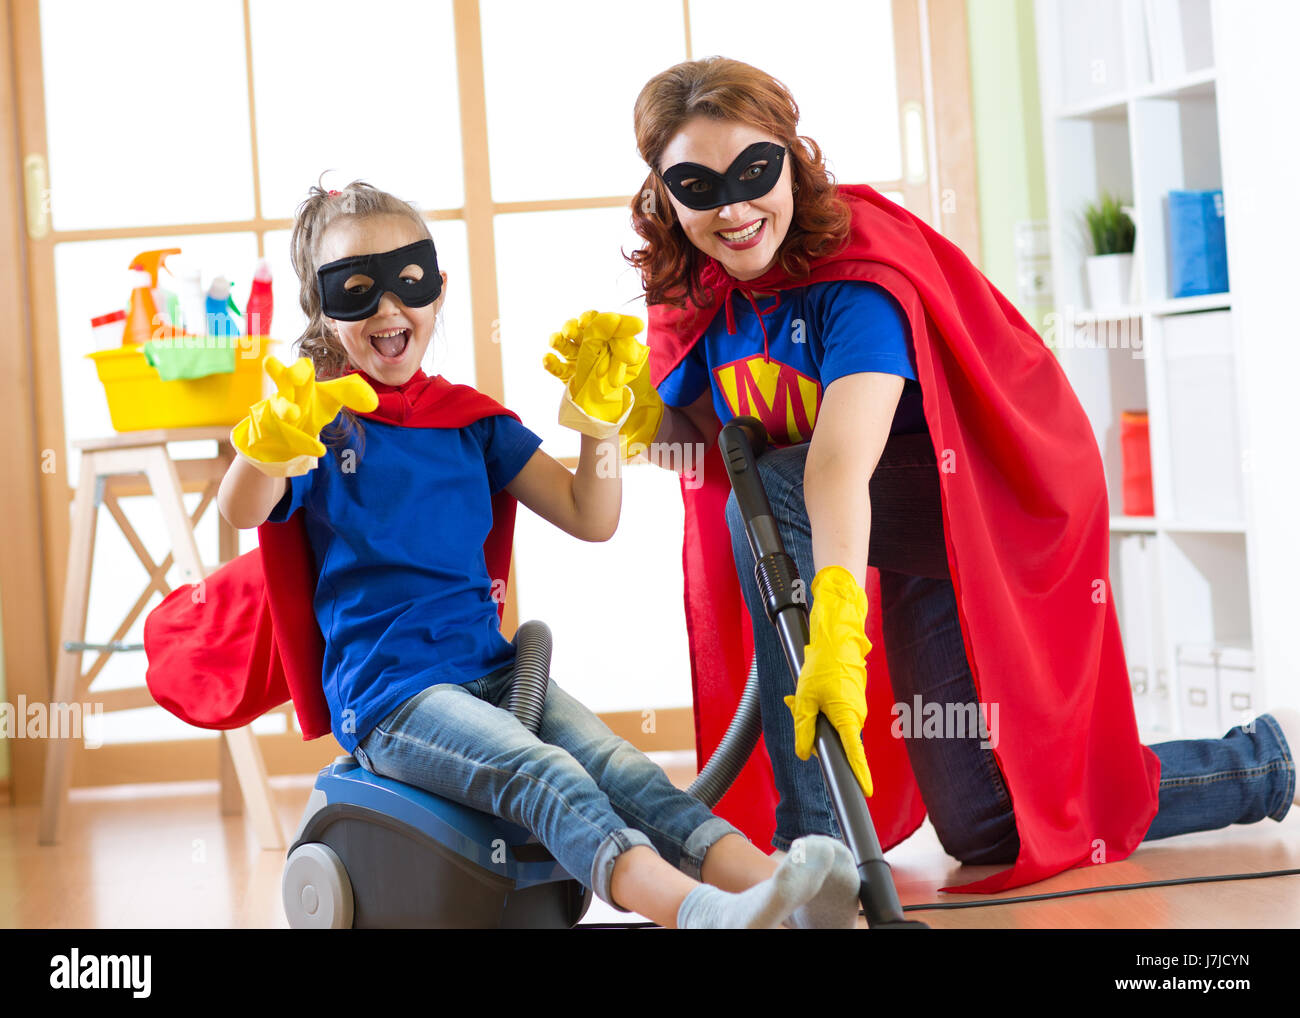 Kid ragazza e sua madre usurata costumi di supereroi. Carino bambino helper e donna rendono la pulizia camera e hanno un divertimento. Foto Stock